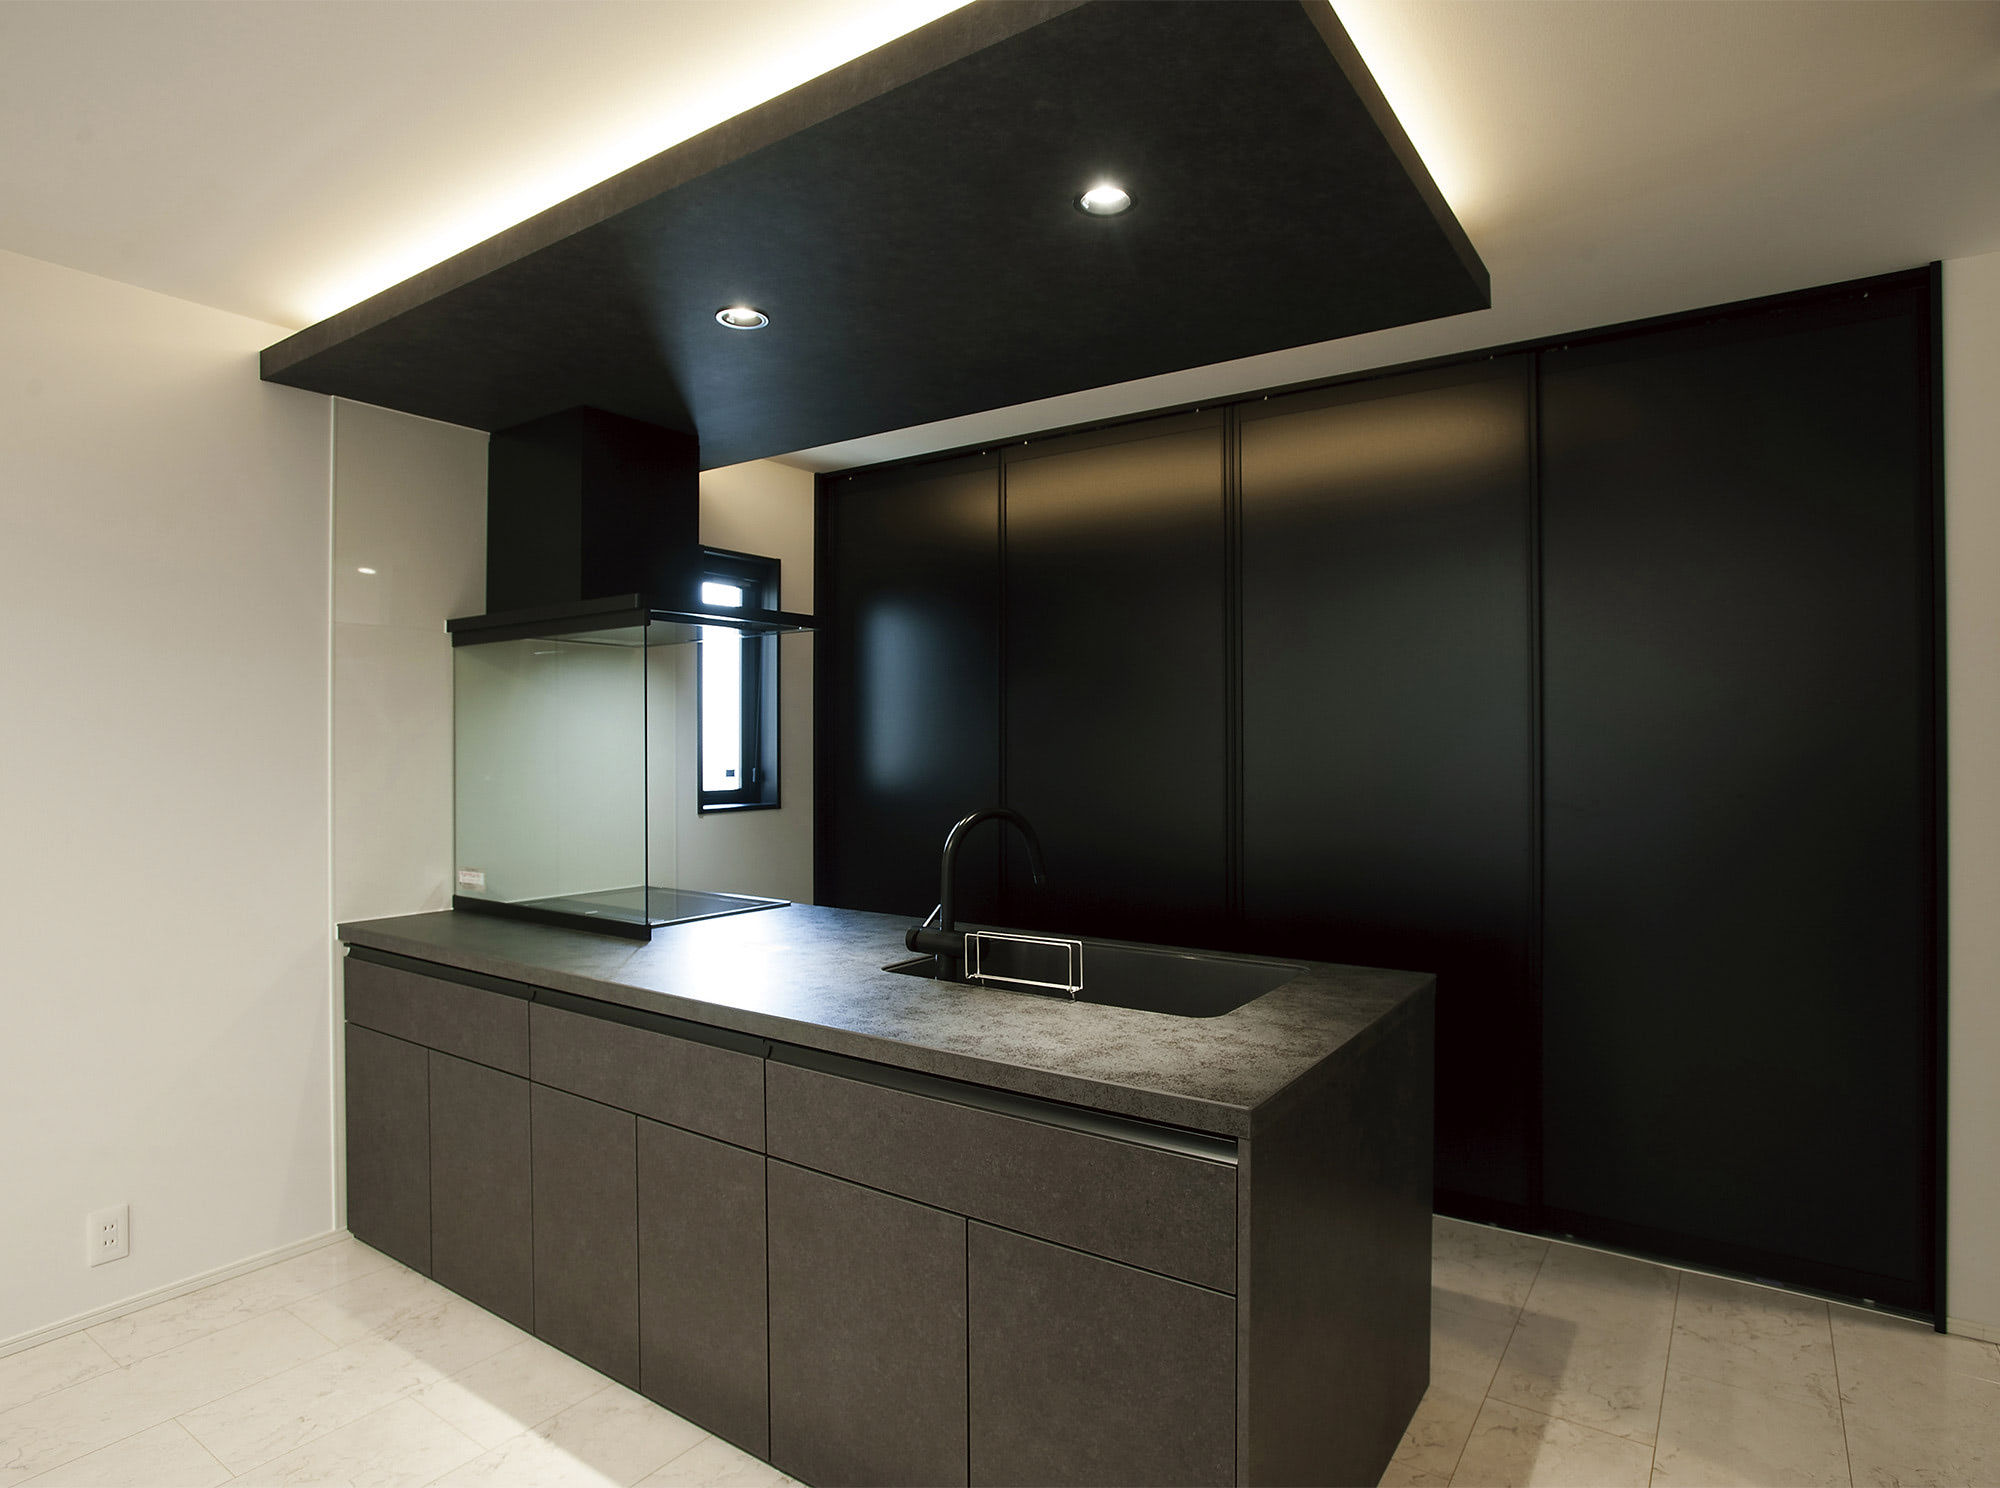 キッチンは、冷蔵庫や家電も収められるブラックの背面収納を採用しています。